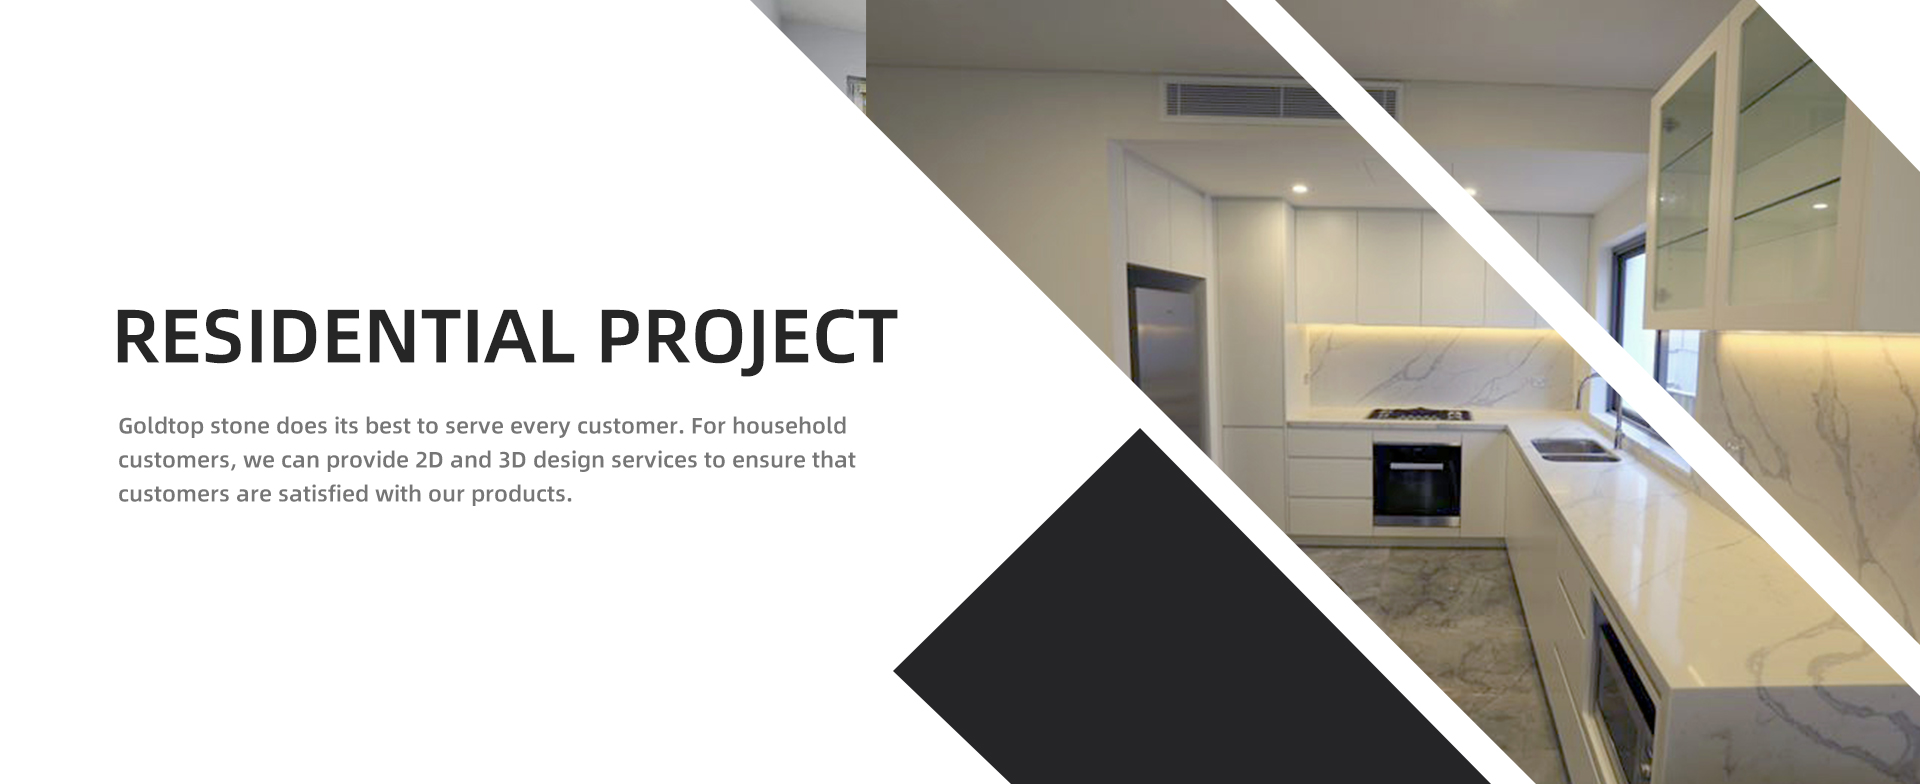 مشروع سكني يبذل حجر جولدتوب قصارى جهده لخدمة كل عميل. للعملاء المنزليين ، يمكننا تقديم خدمات تصميم 2D و 3D لضمان رضا العملاء عن منتجاتنا.